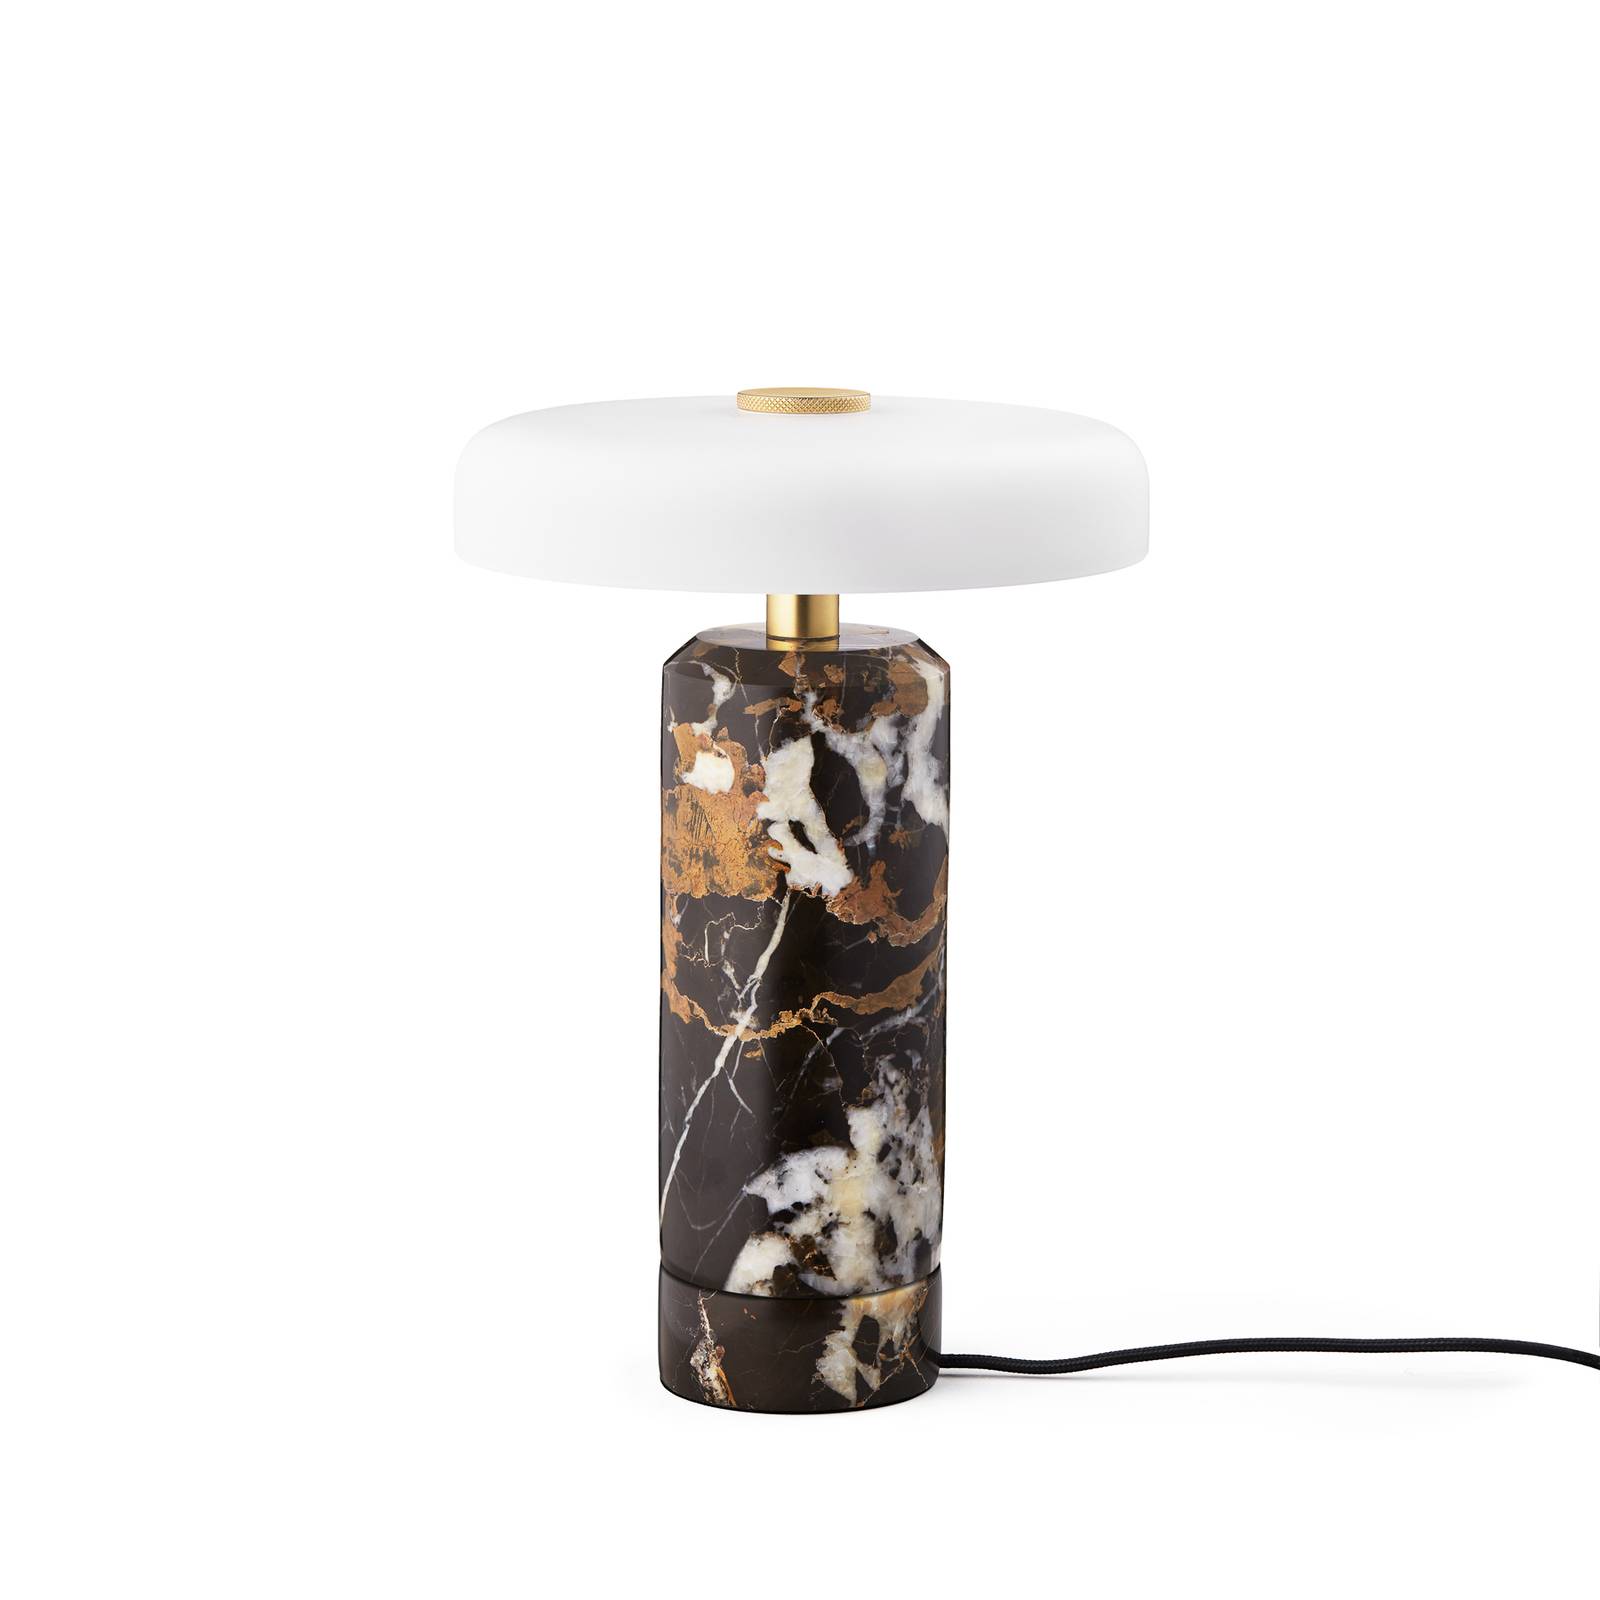 Design by us trip led újratölthető asztali lámpa, színes / fehér, márvány, üveg, ip44